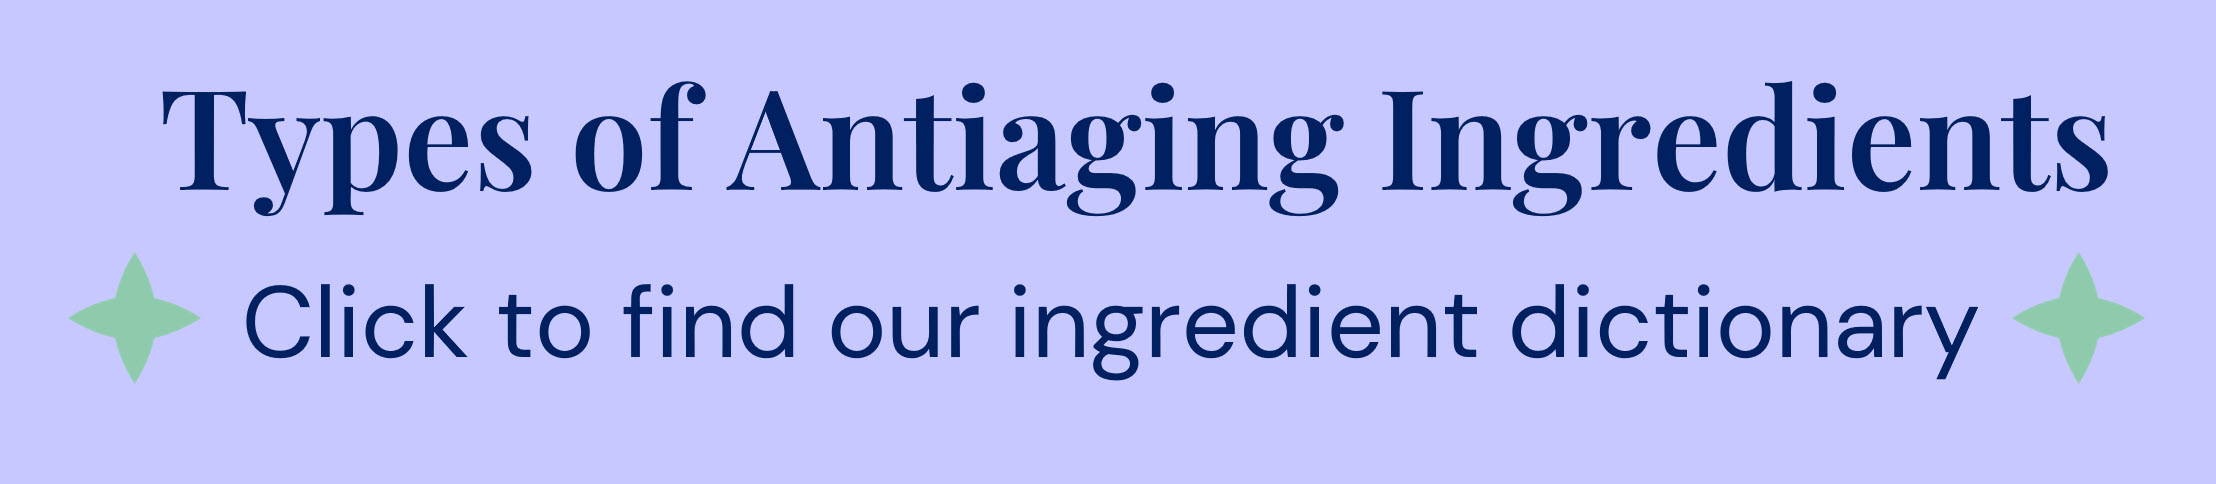 Types of antiaging ingredients.jpg